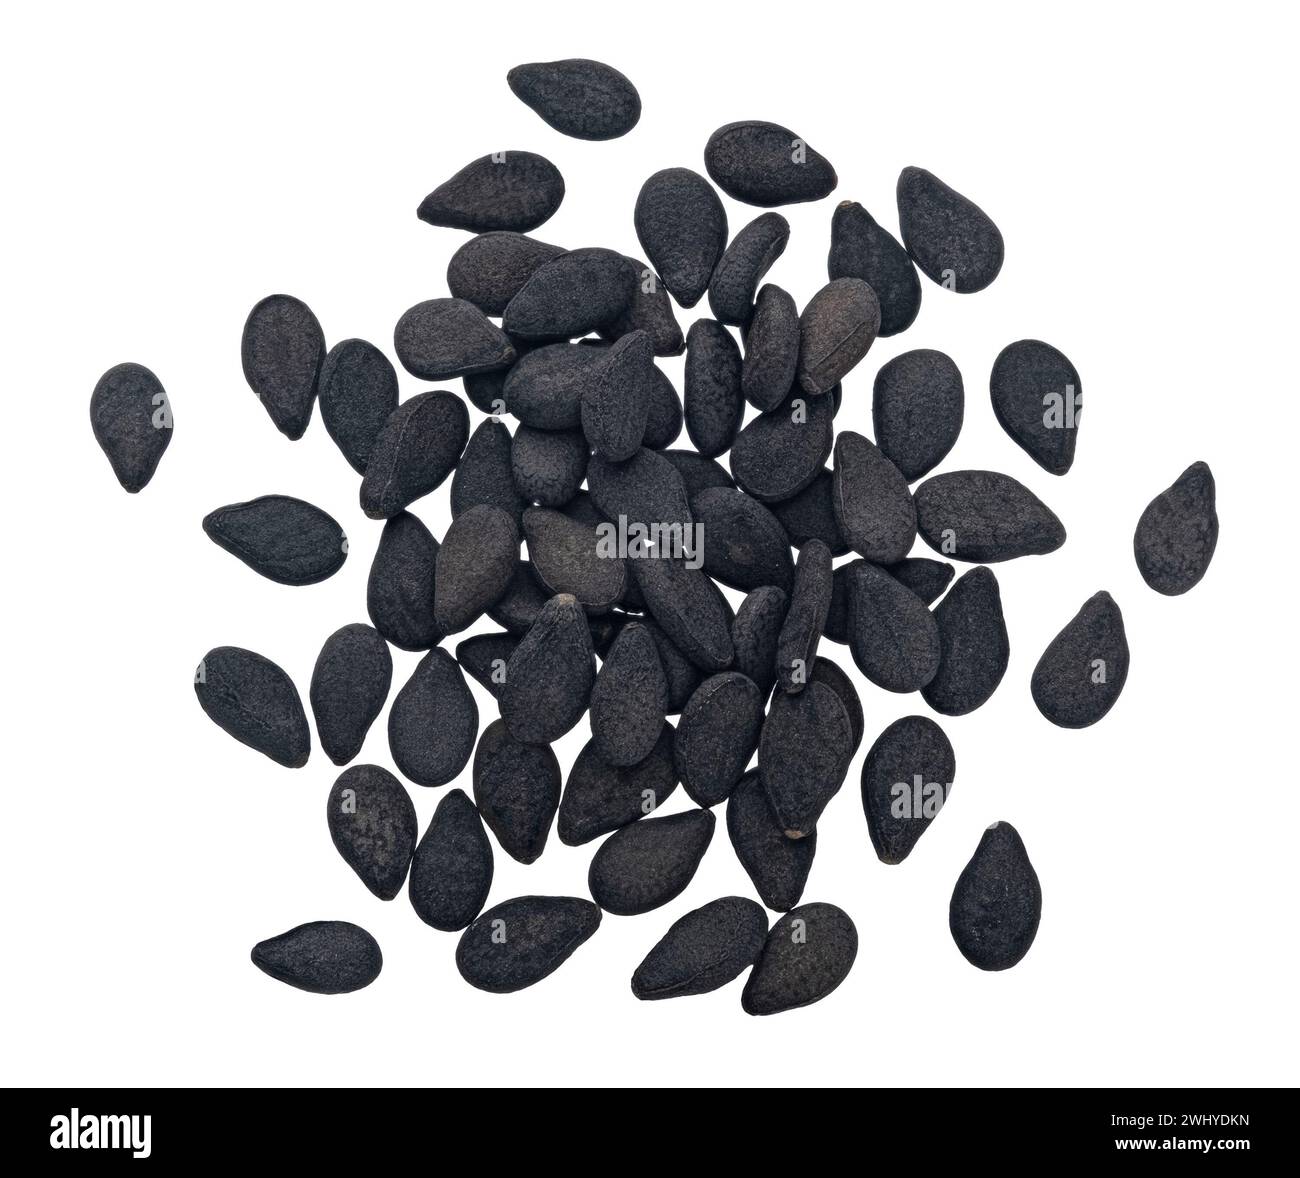 Pila di semi di sesamo nero isolati su sfondo bianco, vista dall'alto Foto Stock